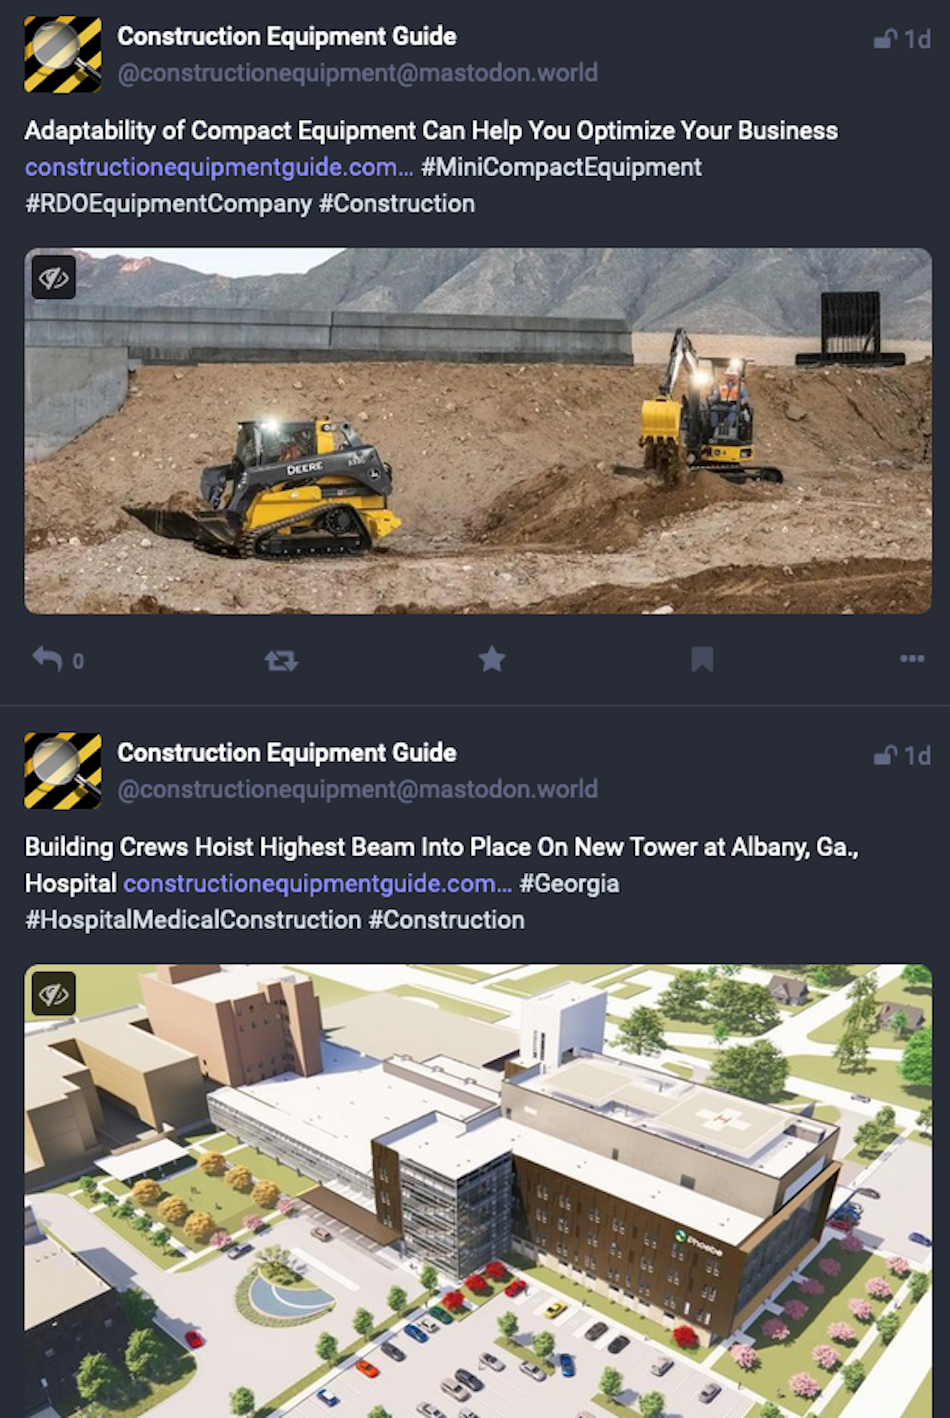 소셜 미디어 플랫폼 Mastodon의 두 게시물에는 업계 뉴스 매체인 Construction Equipment Guide가 사이트의 뉴스 기사를 홍보하는 내용이 나와 있습니다.